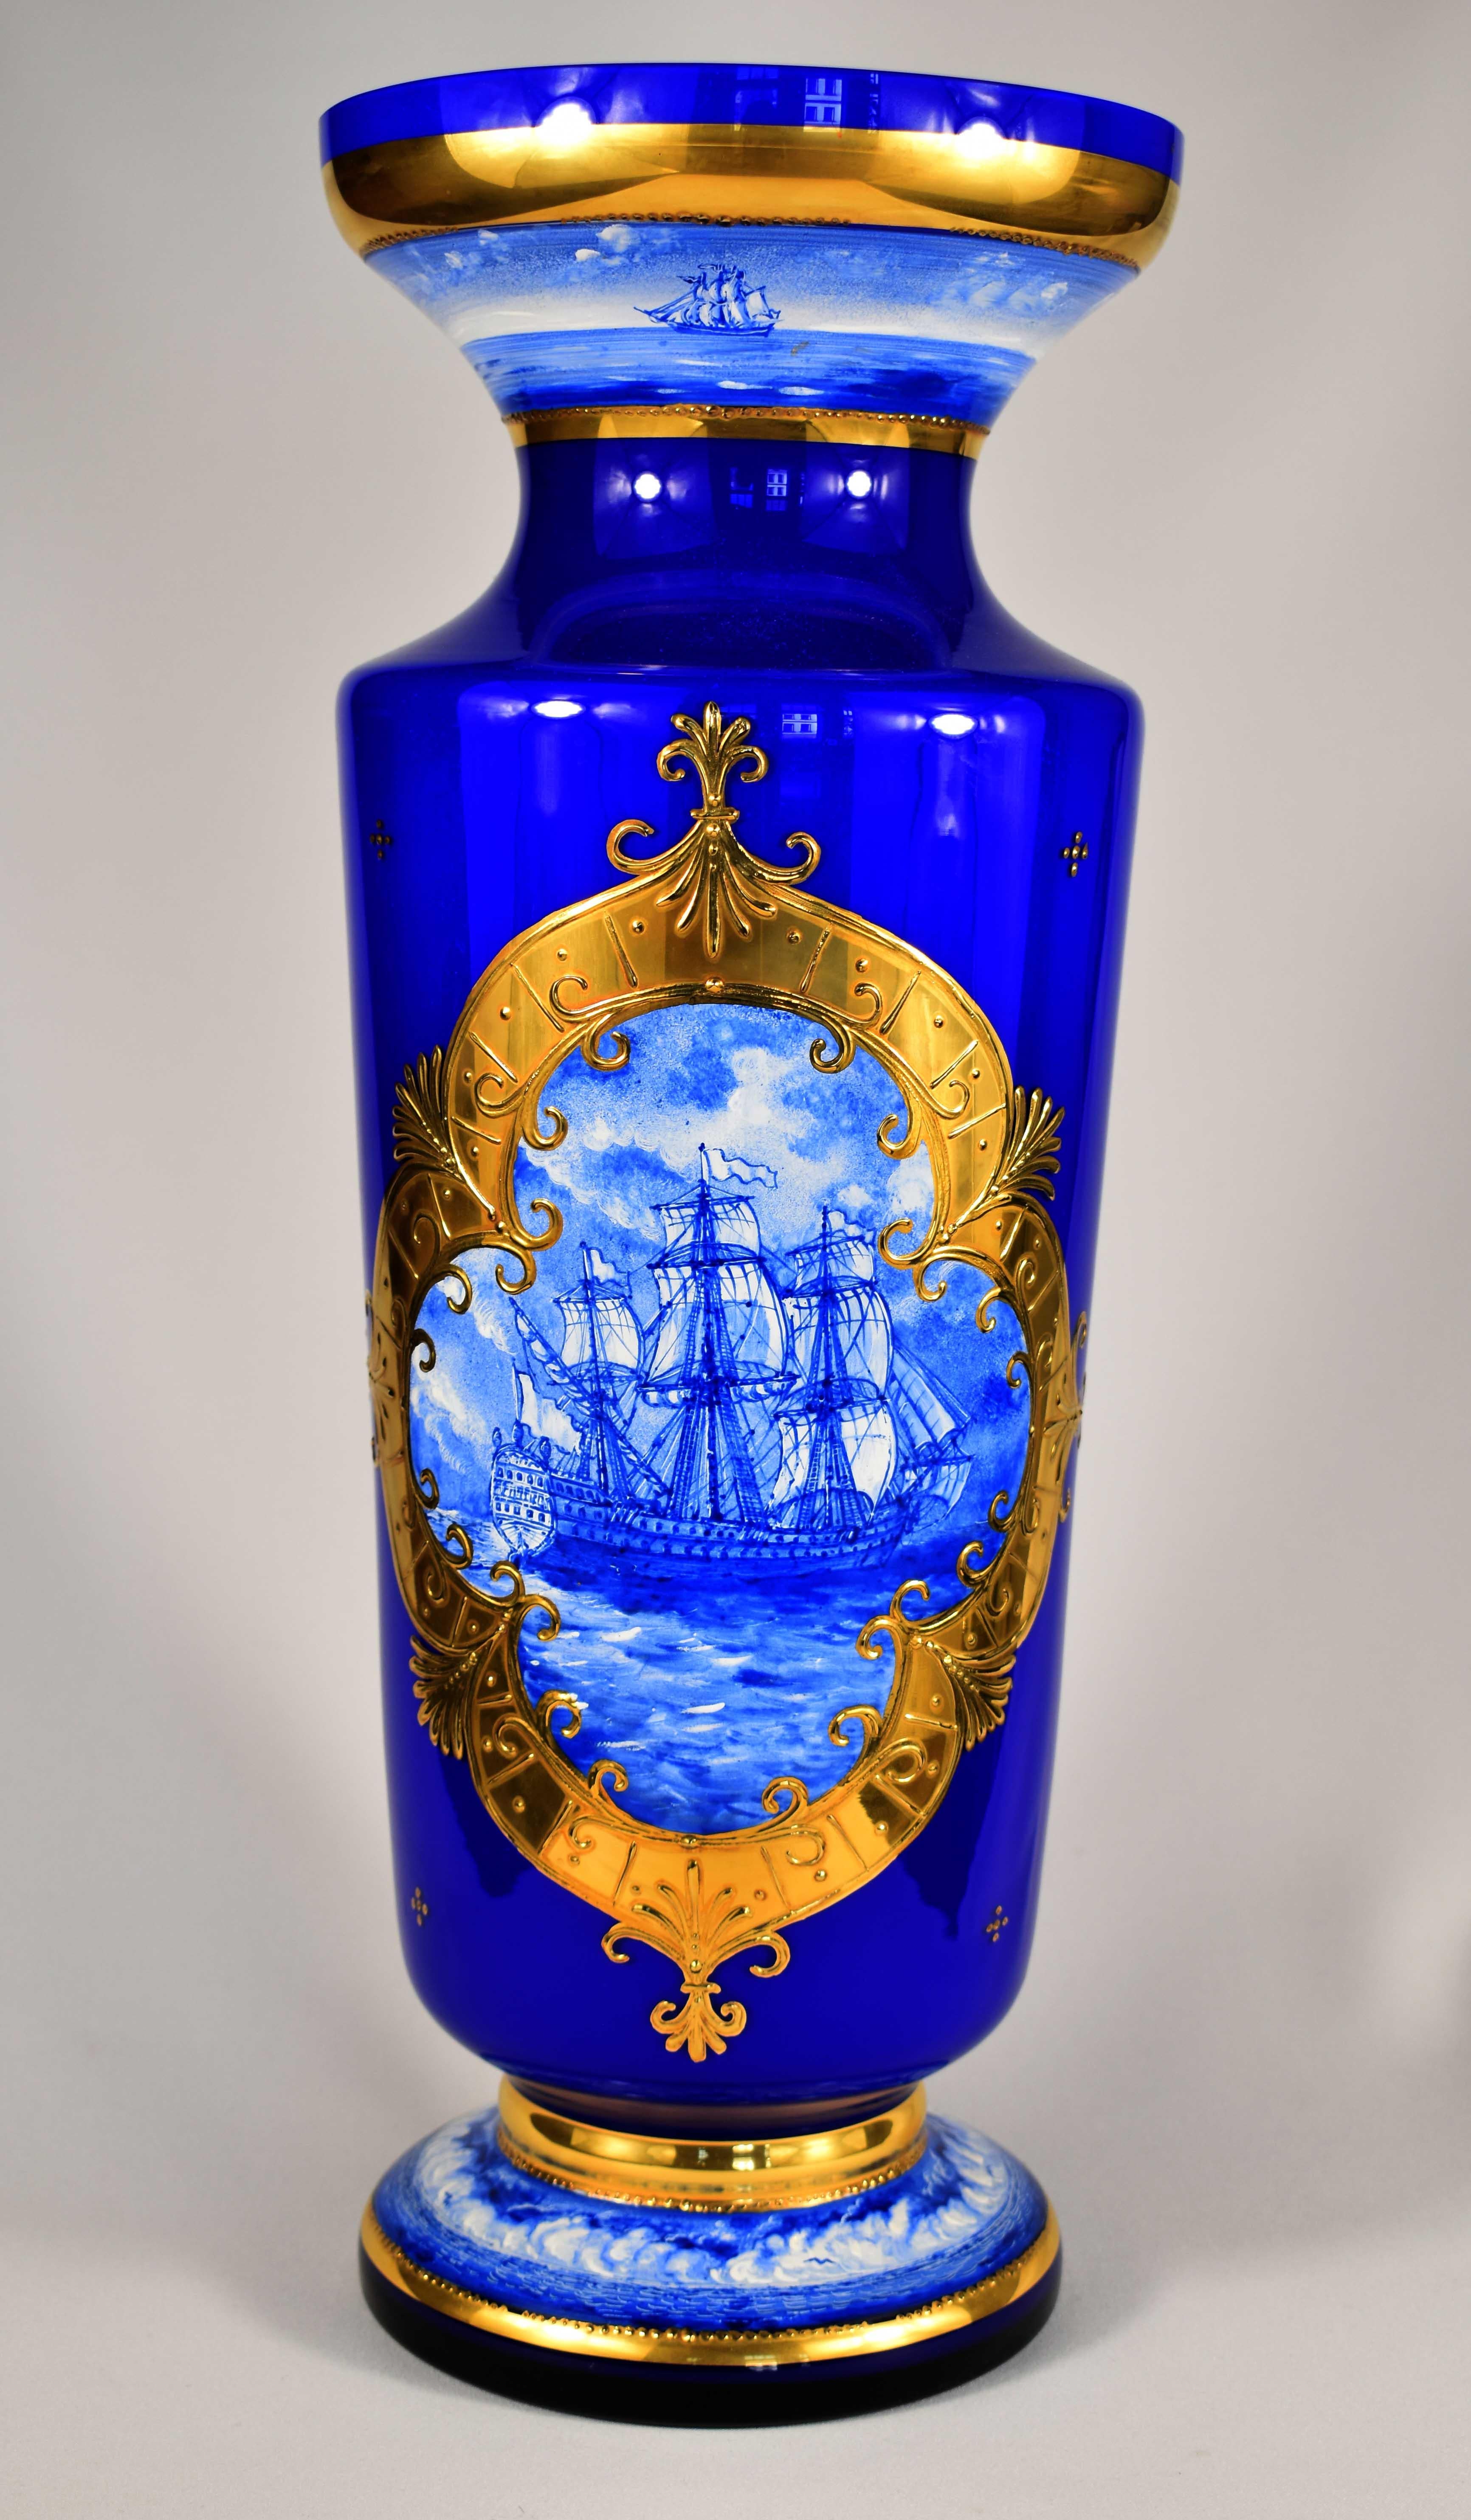 Magnifique grand vase fait à la main, Il est en verre opale recouvert de verre bleu cobalt, Le vase est peint à la main avec le motif de navires, la peinture des navires est faite dans les tons bleus et les ornements sont dorés, C'est un travail